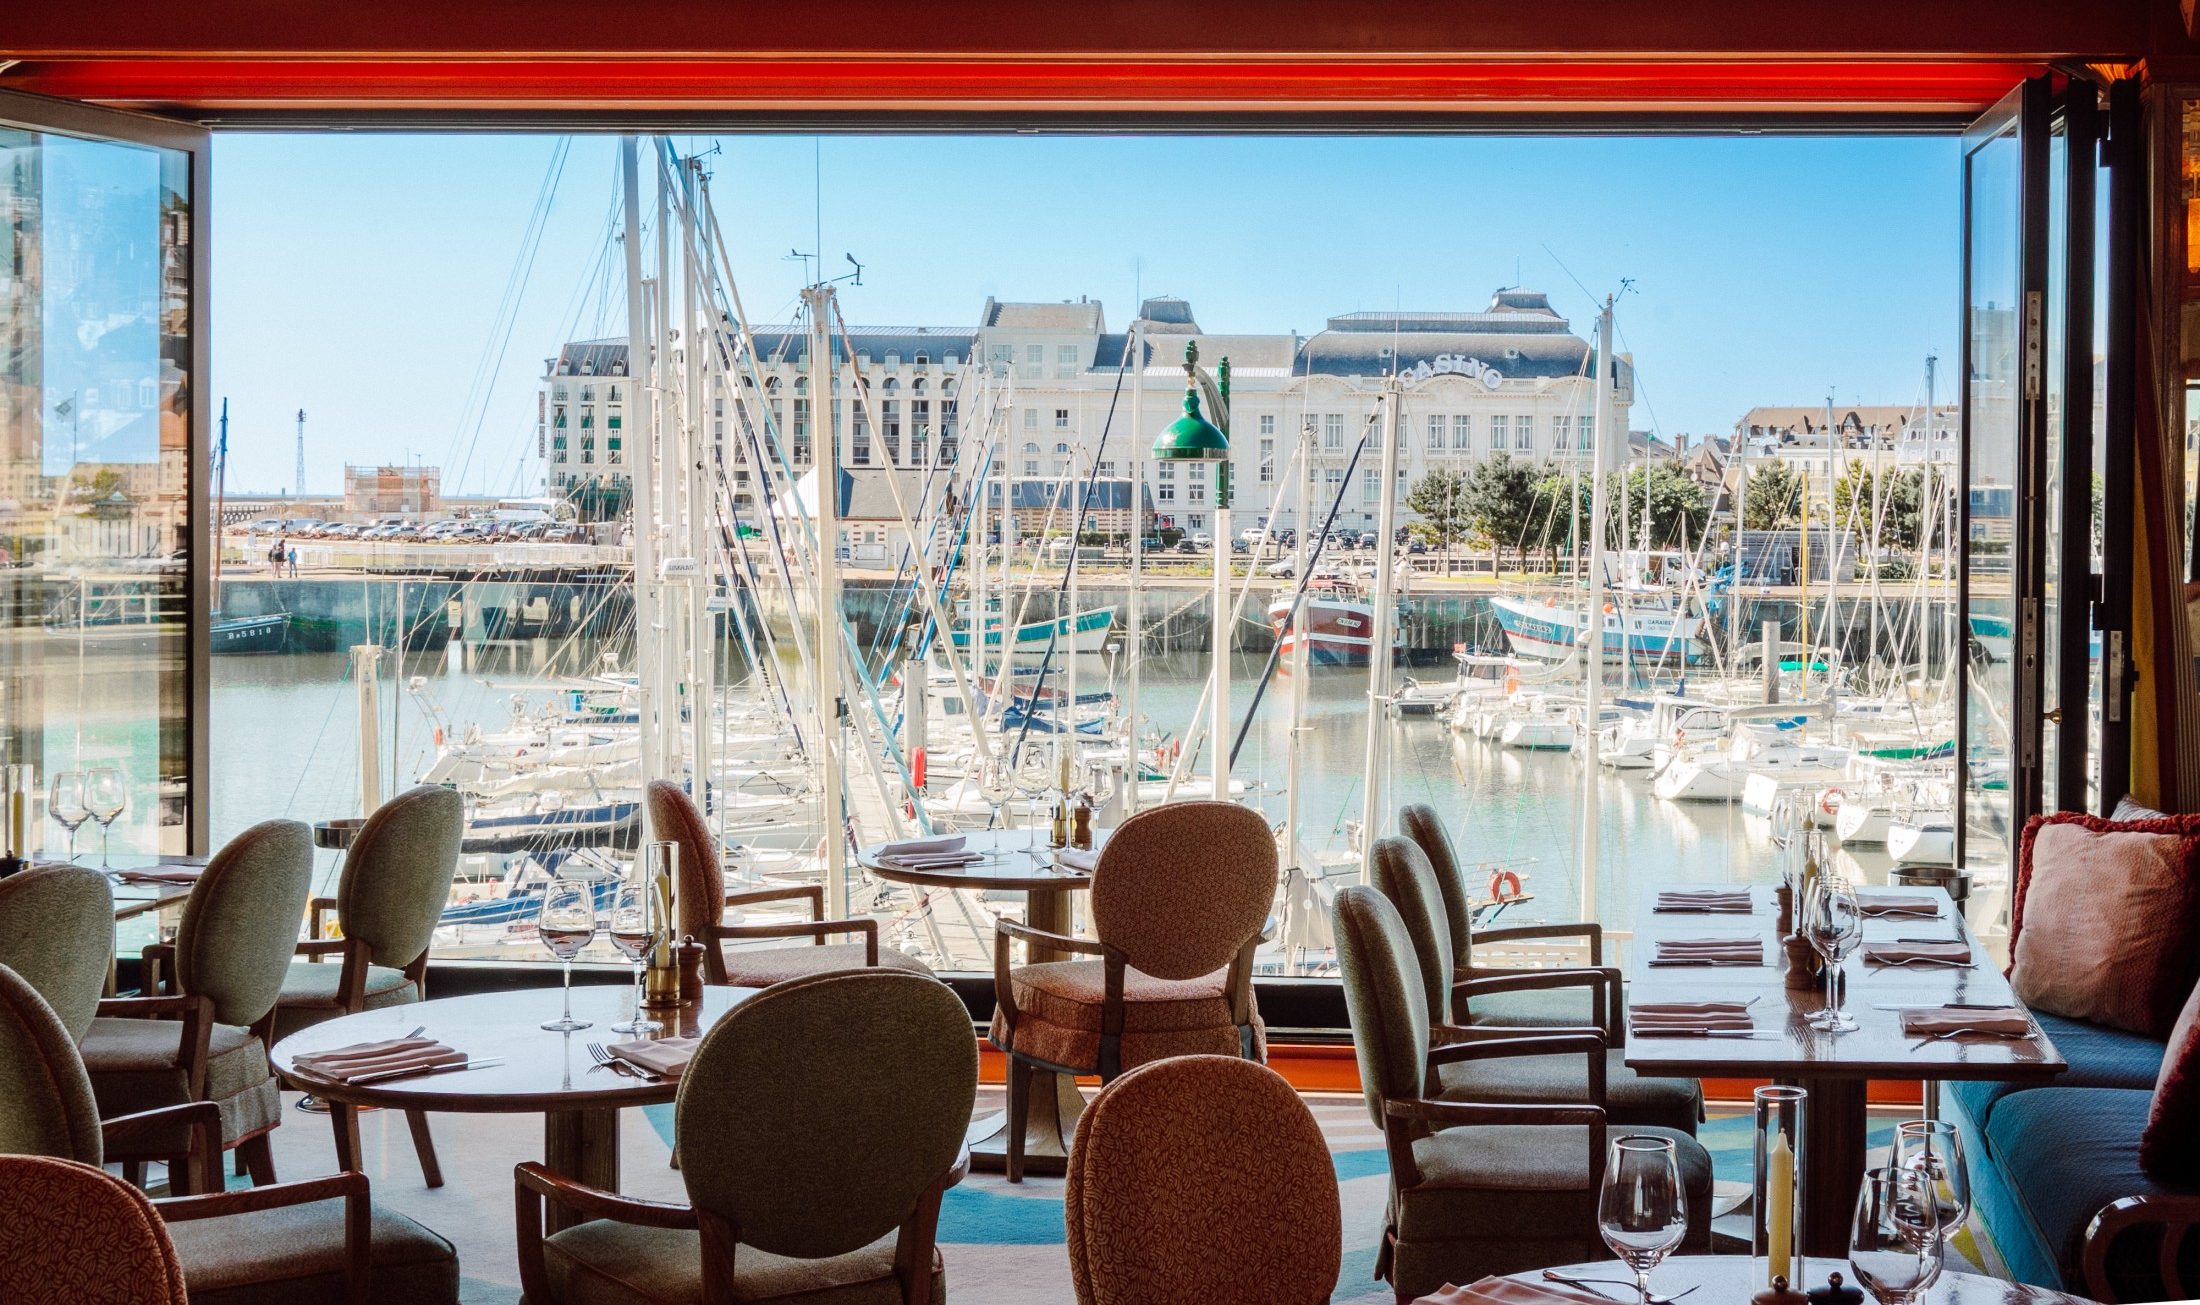 Intérieur du restaurant deauville vue sur mer et sa vue sur le port de plaisance, avec décoration années 50. Le restaurant Le Deauville et sa décoration d'inspiration années 50, pensée par Martin Brudniski.